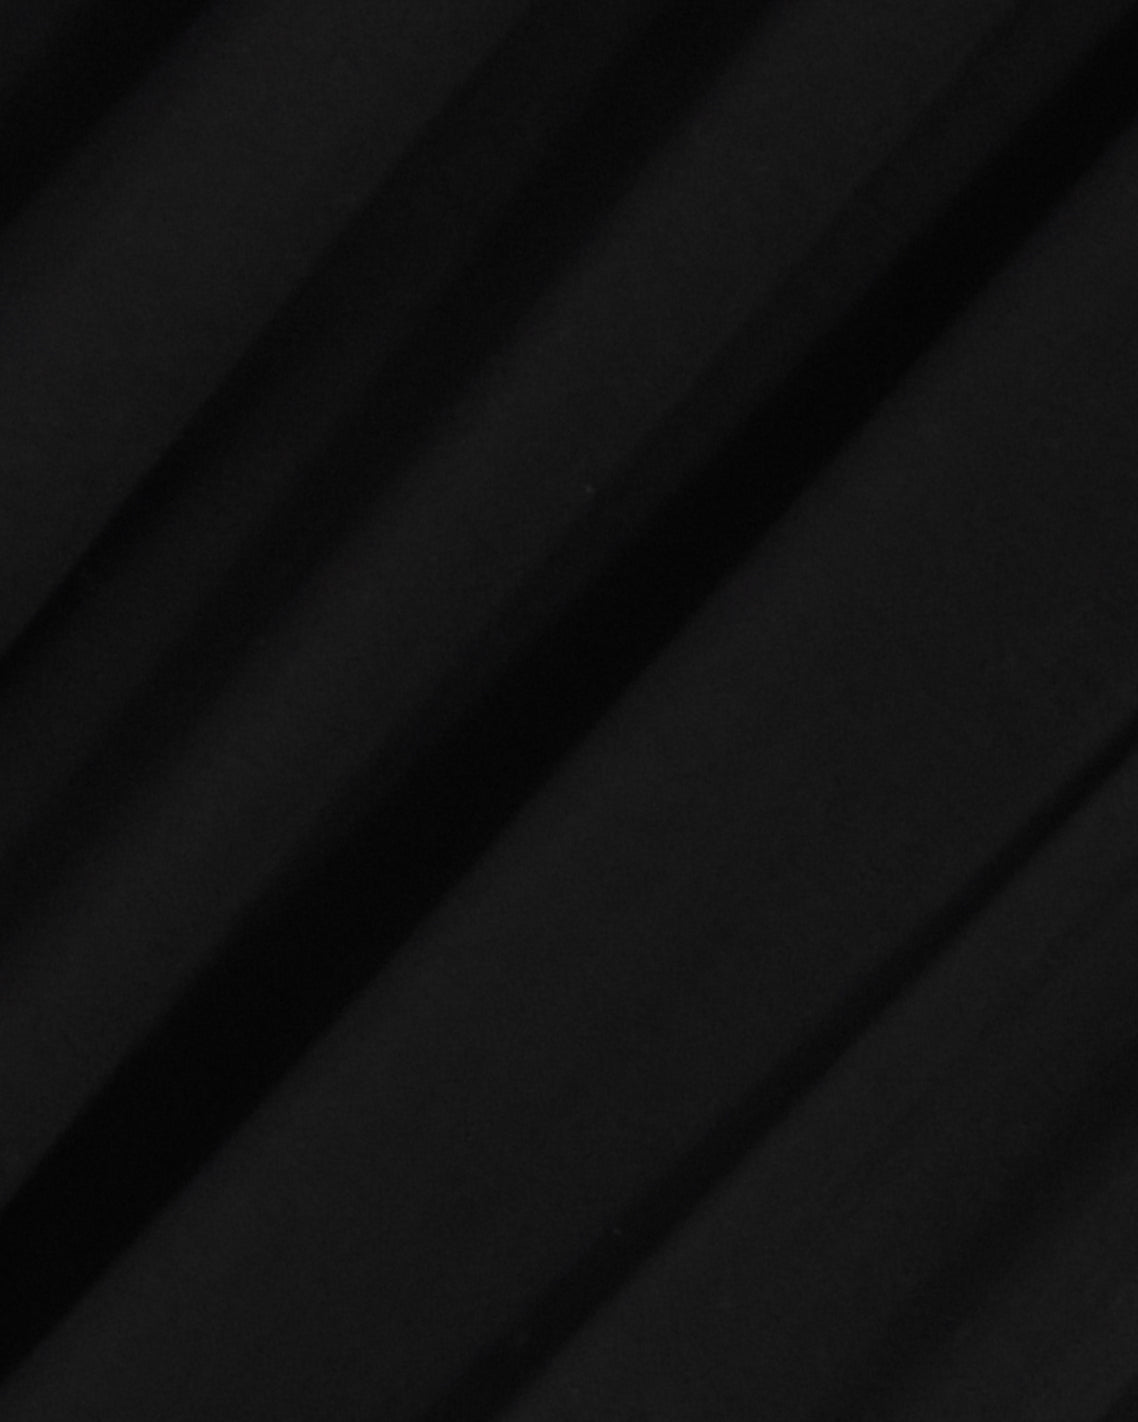 Knit Midi Skirt in Black